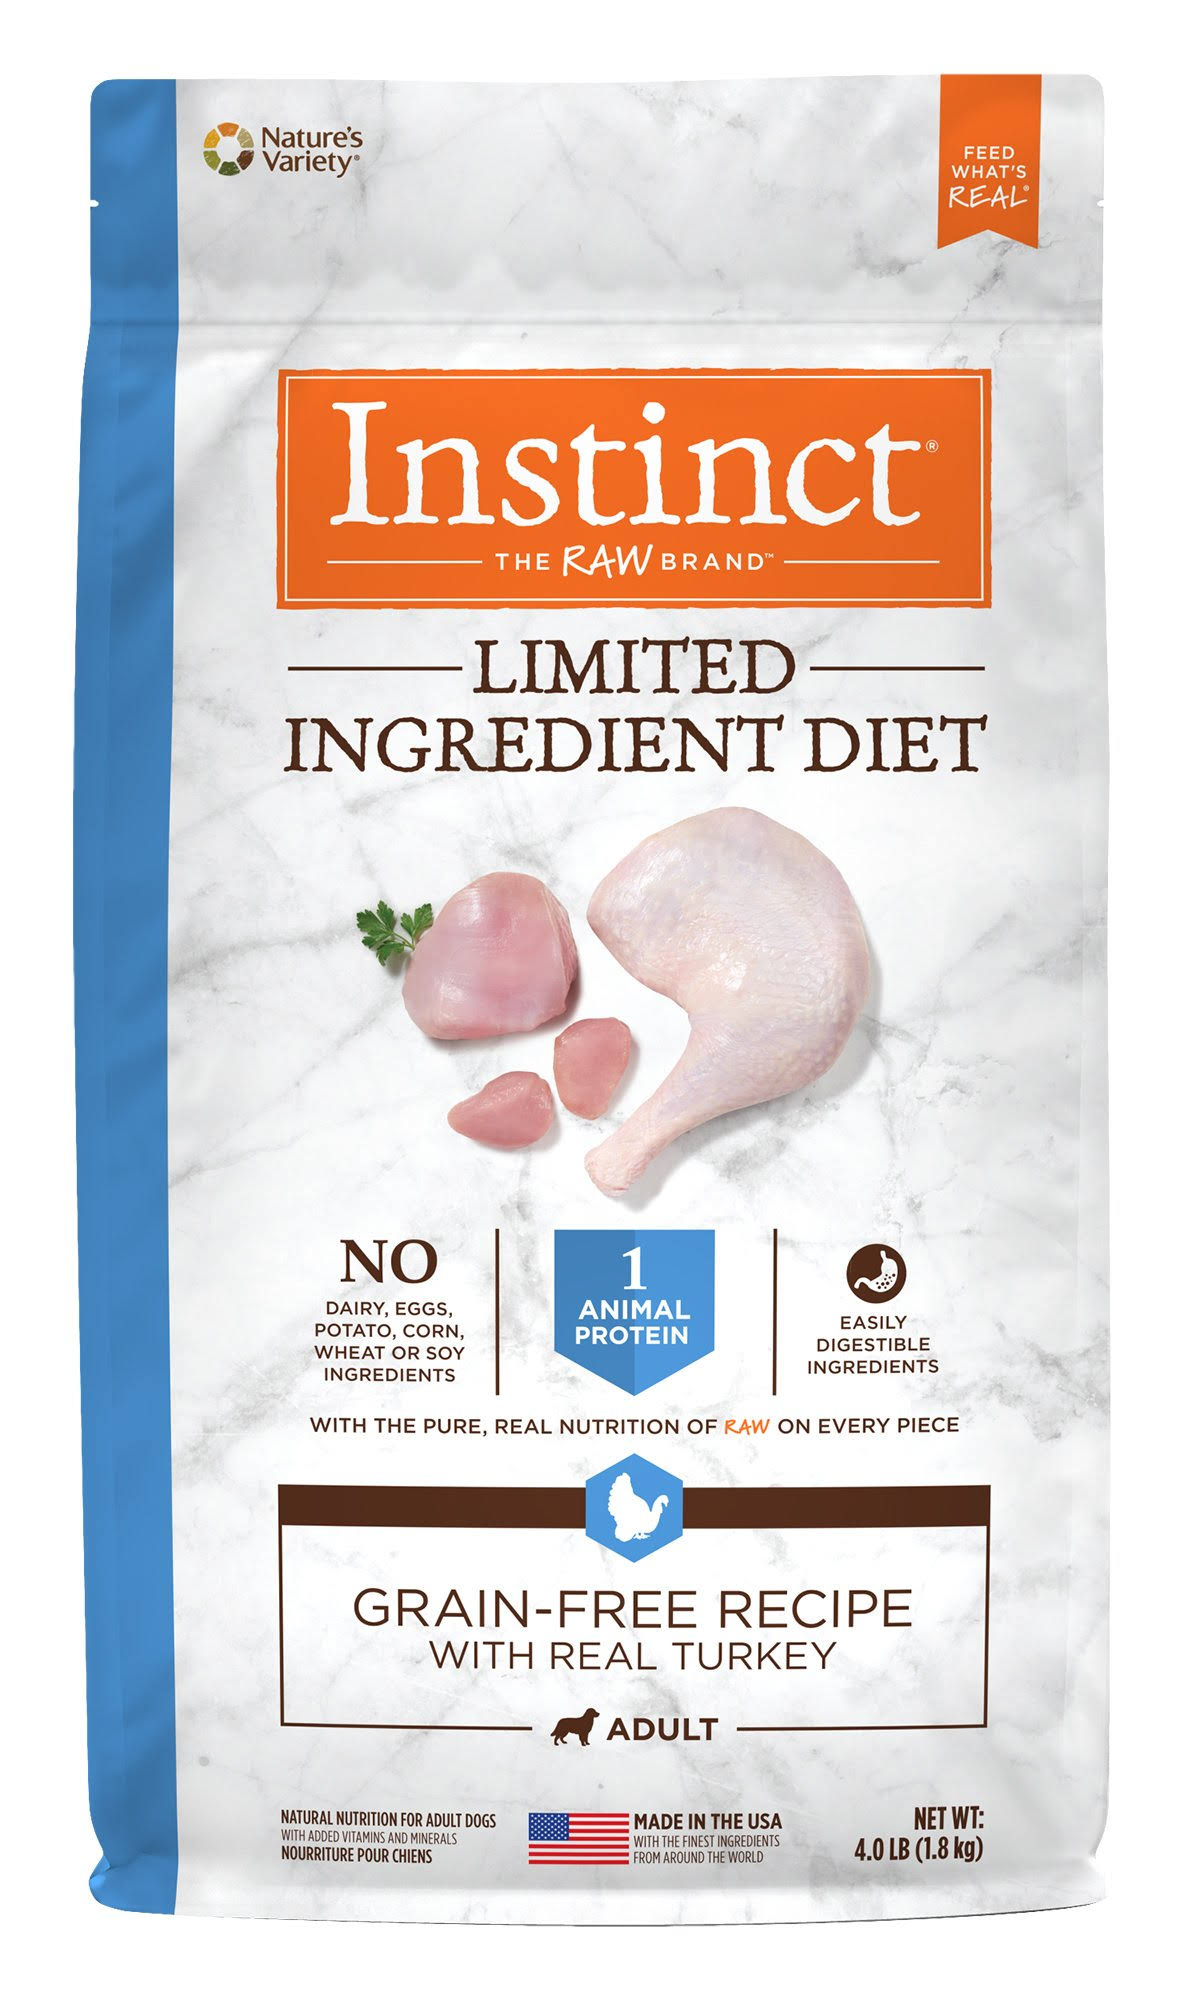 Nature's Variety Instinct Limited Ingredient Diet